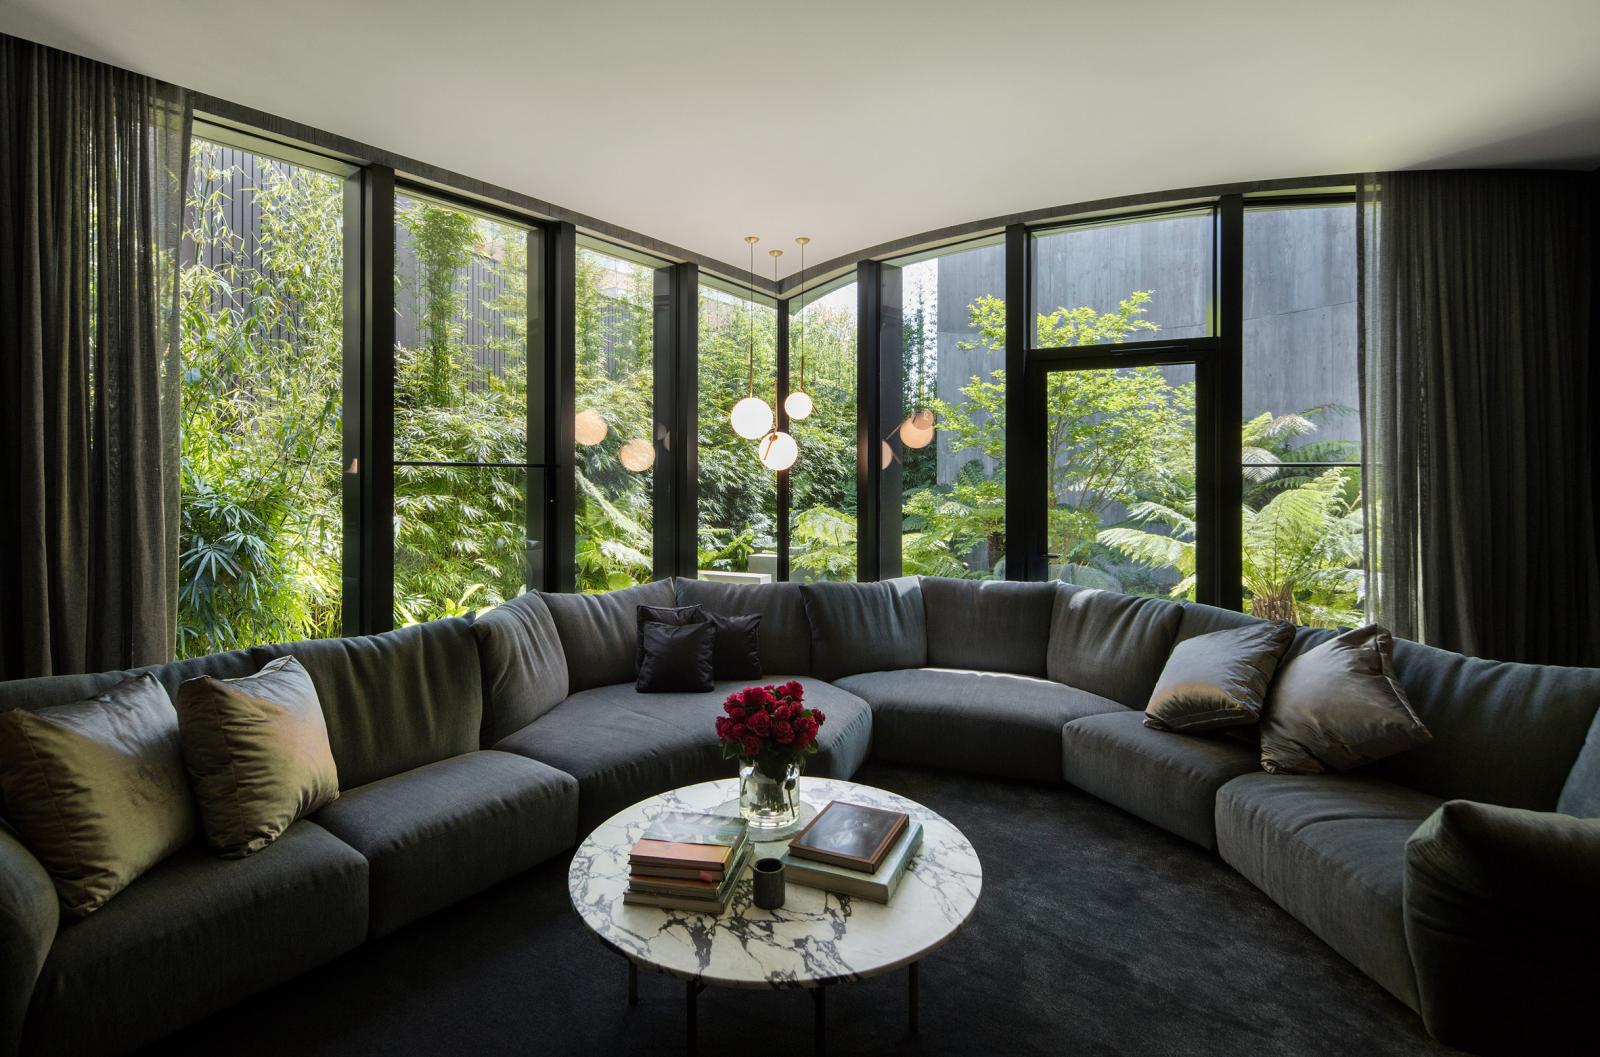 hình ảnh phòng sinh hoạt chung gia đình rộng rãi, tiện nghi với sofa ghi xám lớn, tường kính trong suốt nhìn ra vườn cây xanh tốt bên ngoài